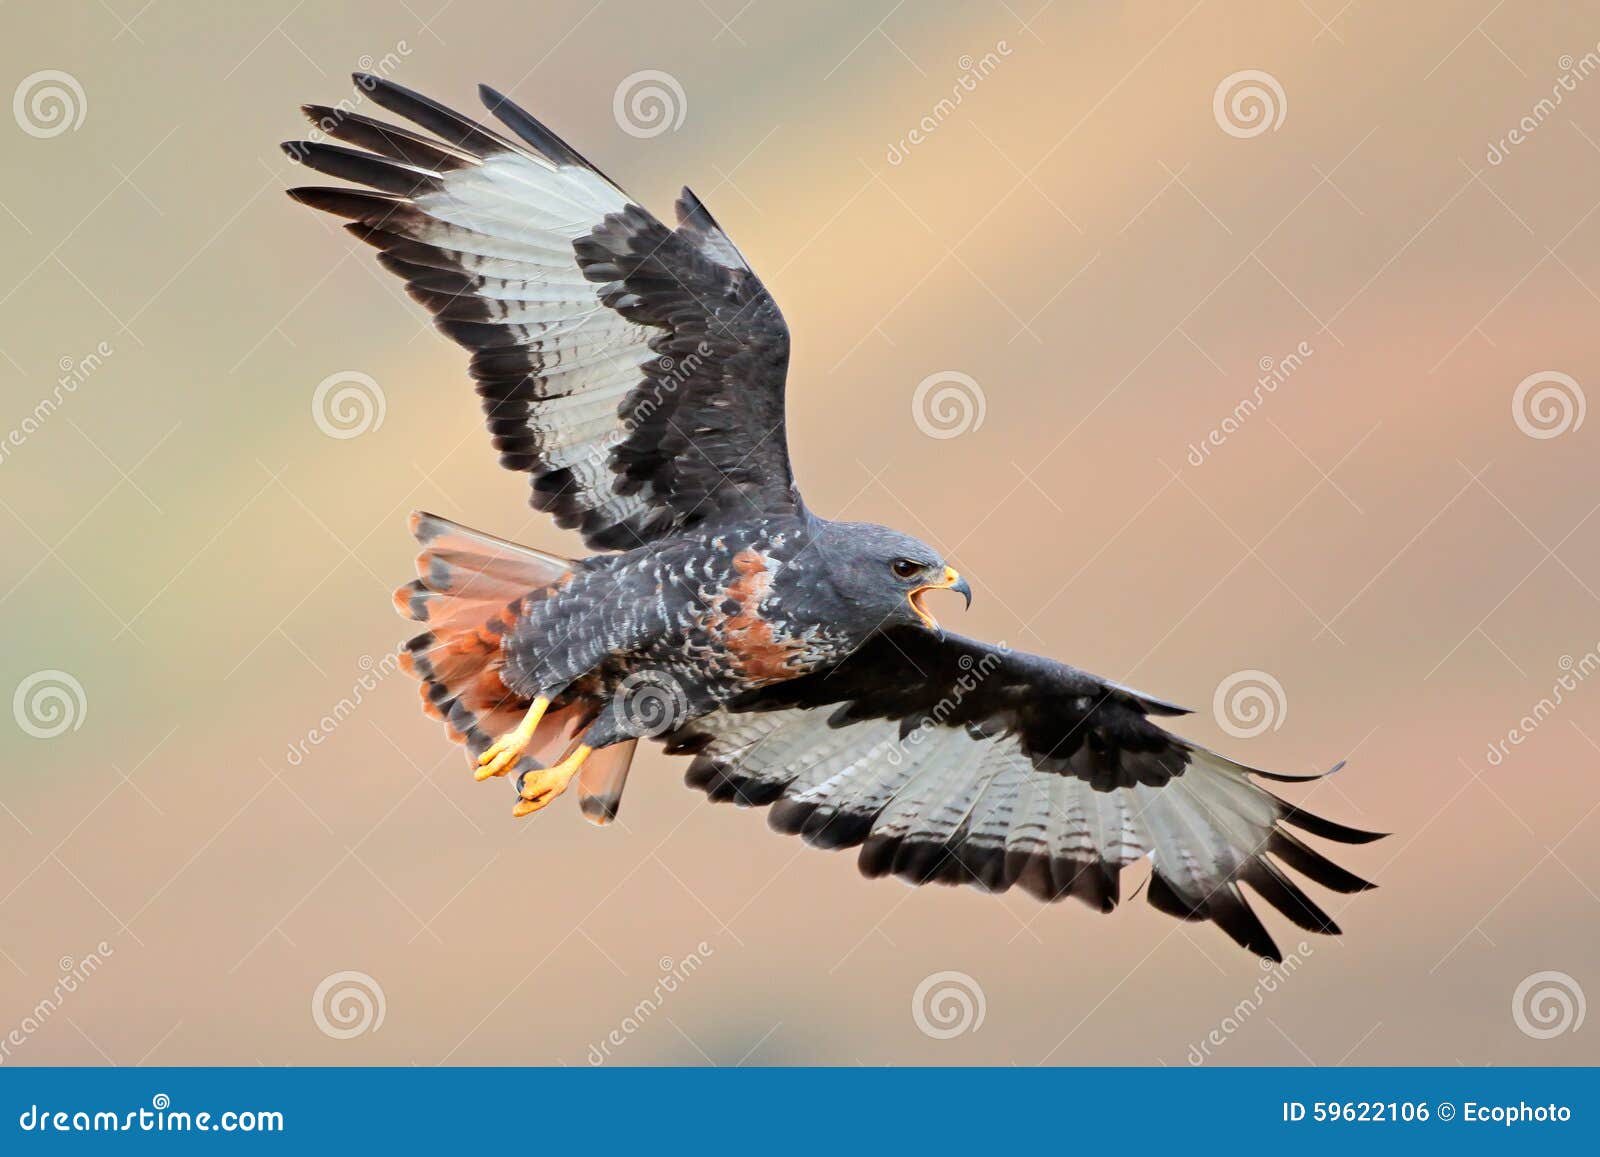 jackal buzzard in flight